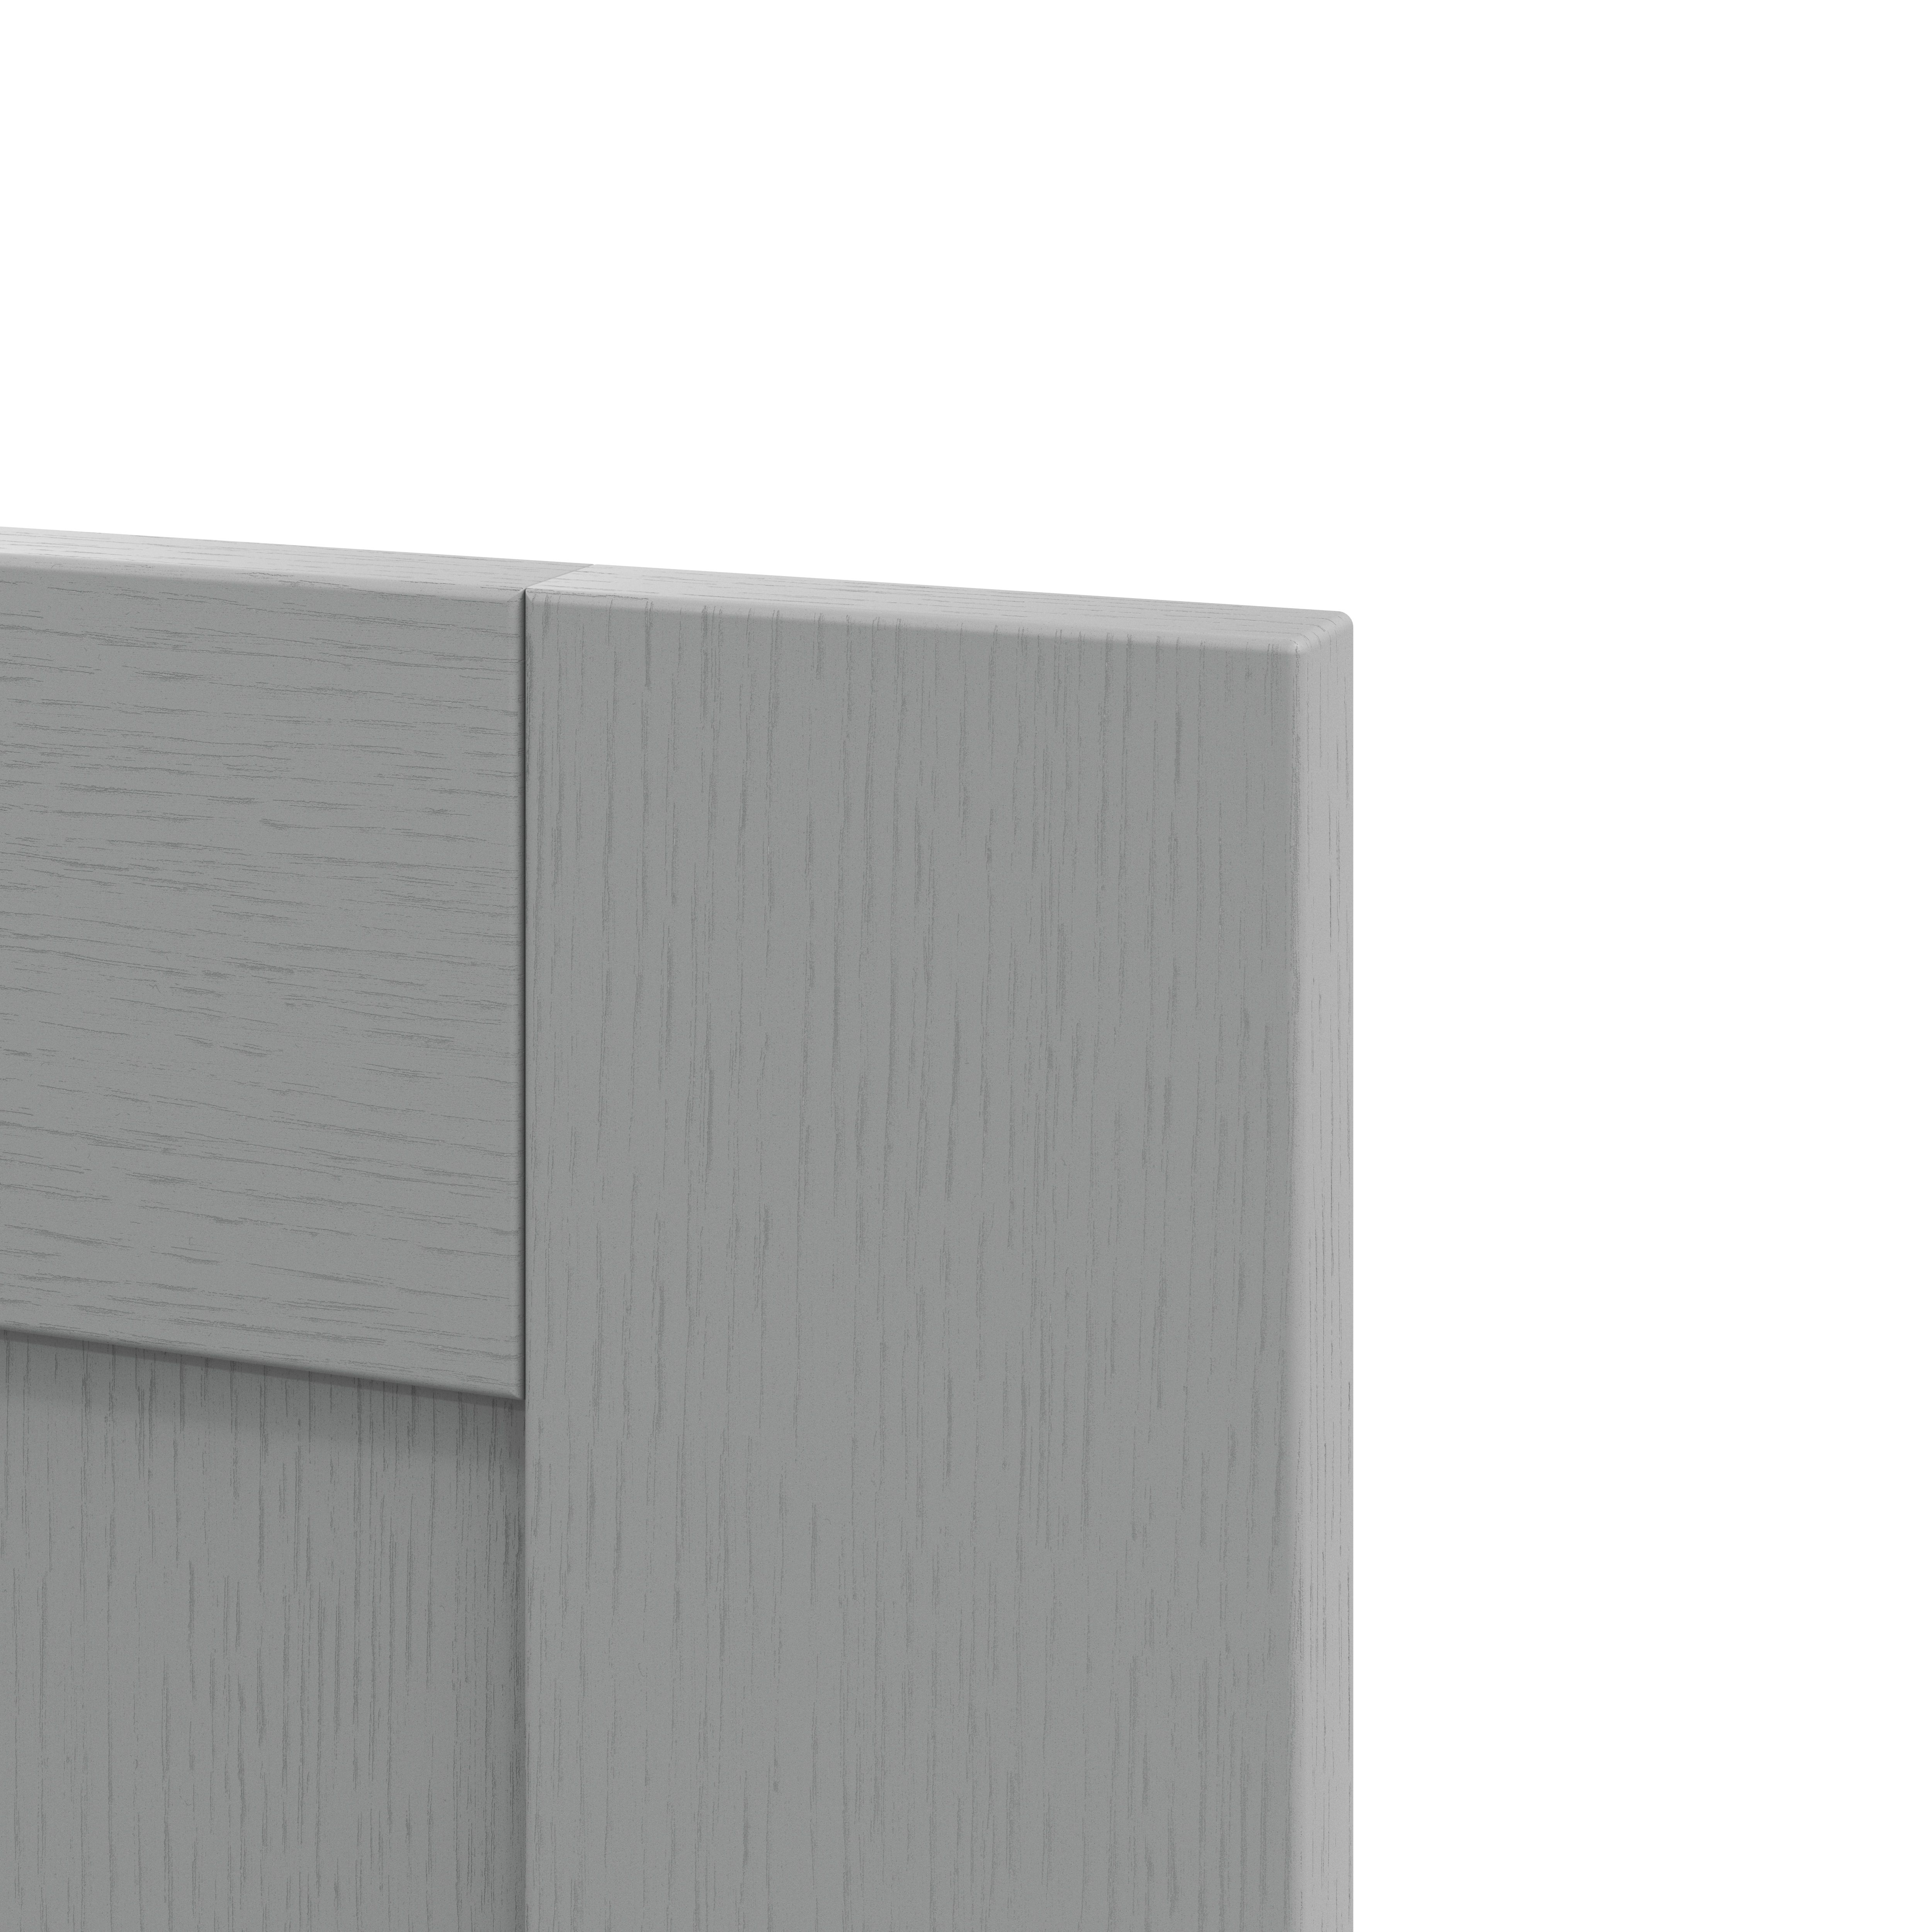 GoodHome Alpinia Matt Slate Grey Painted Wood Effect Shaker Appliance Cabinet door (W)600mm (H)687mm (T)18mm